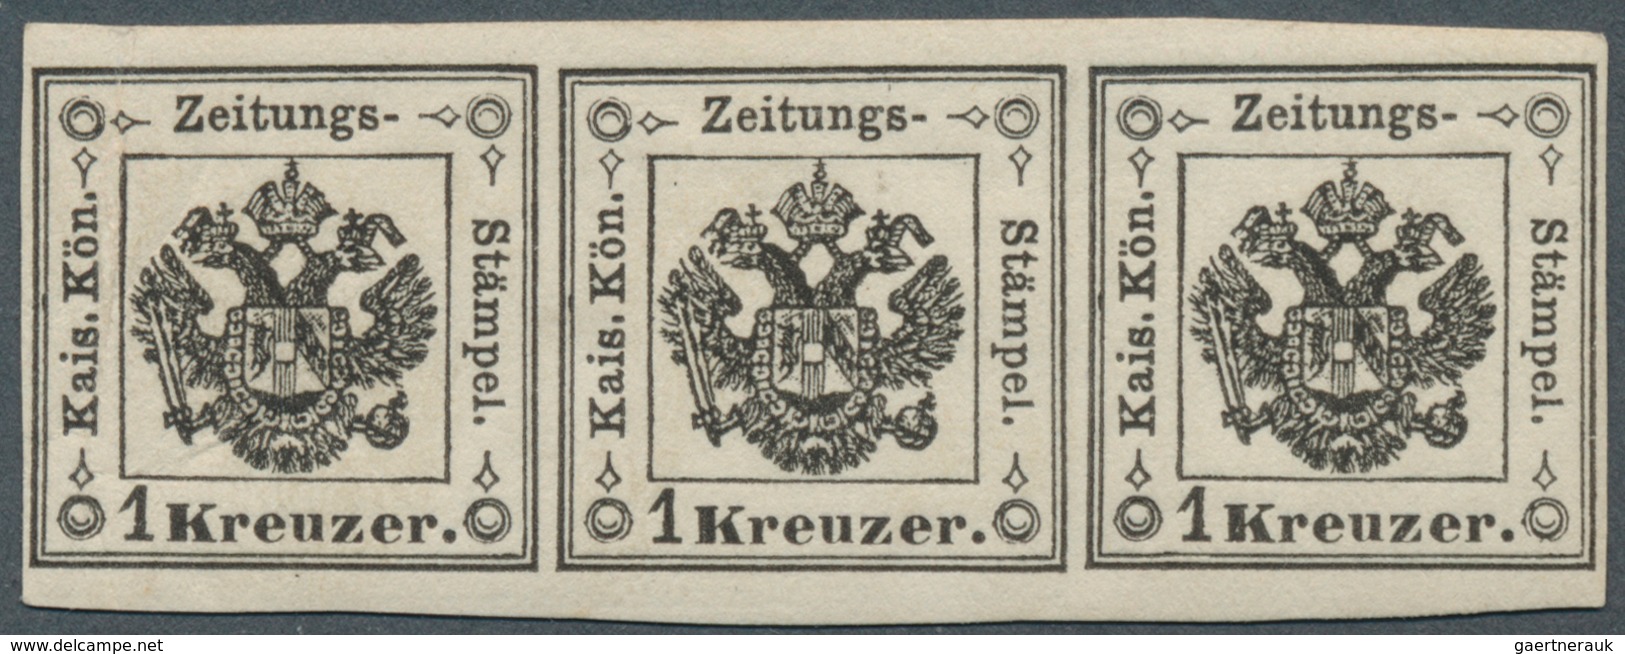 Österreich - Lombardei Und Venetien - Zeitungsstempelmarken: 1859, 1 Kreuzer Schwarz, Type I, Waager - Lombardy-Venetia